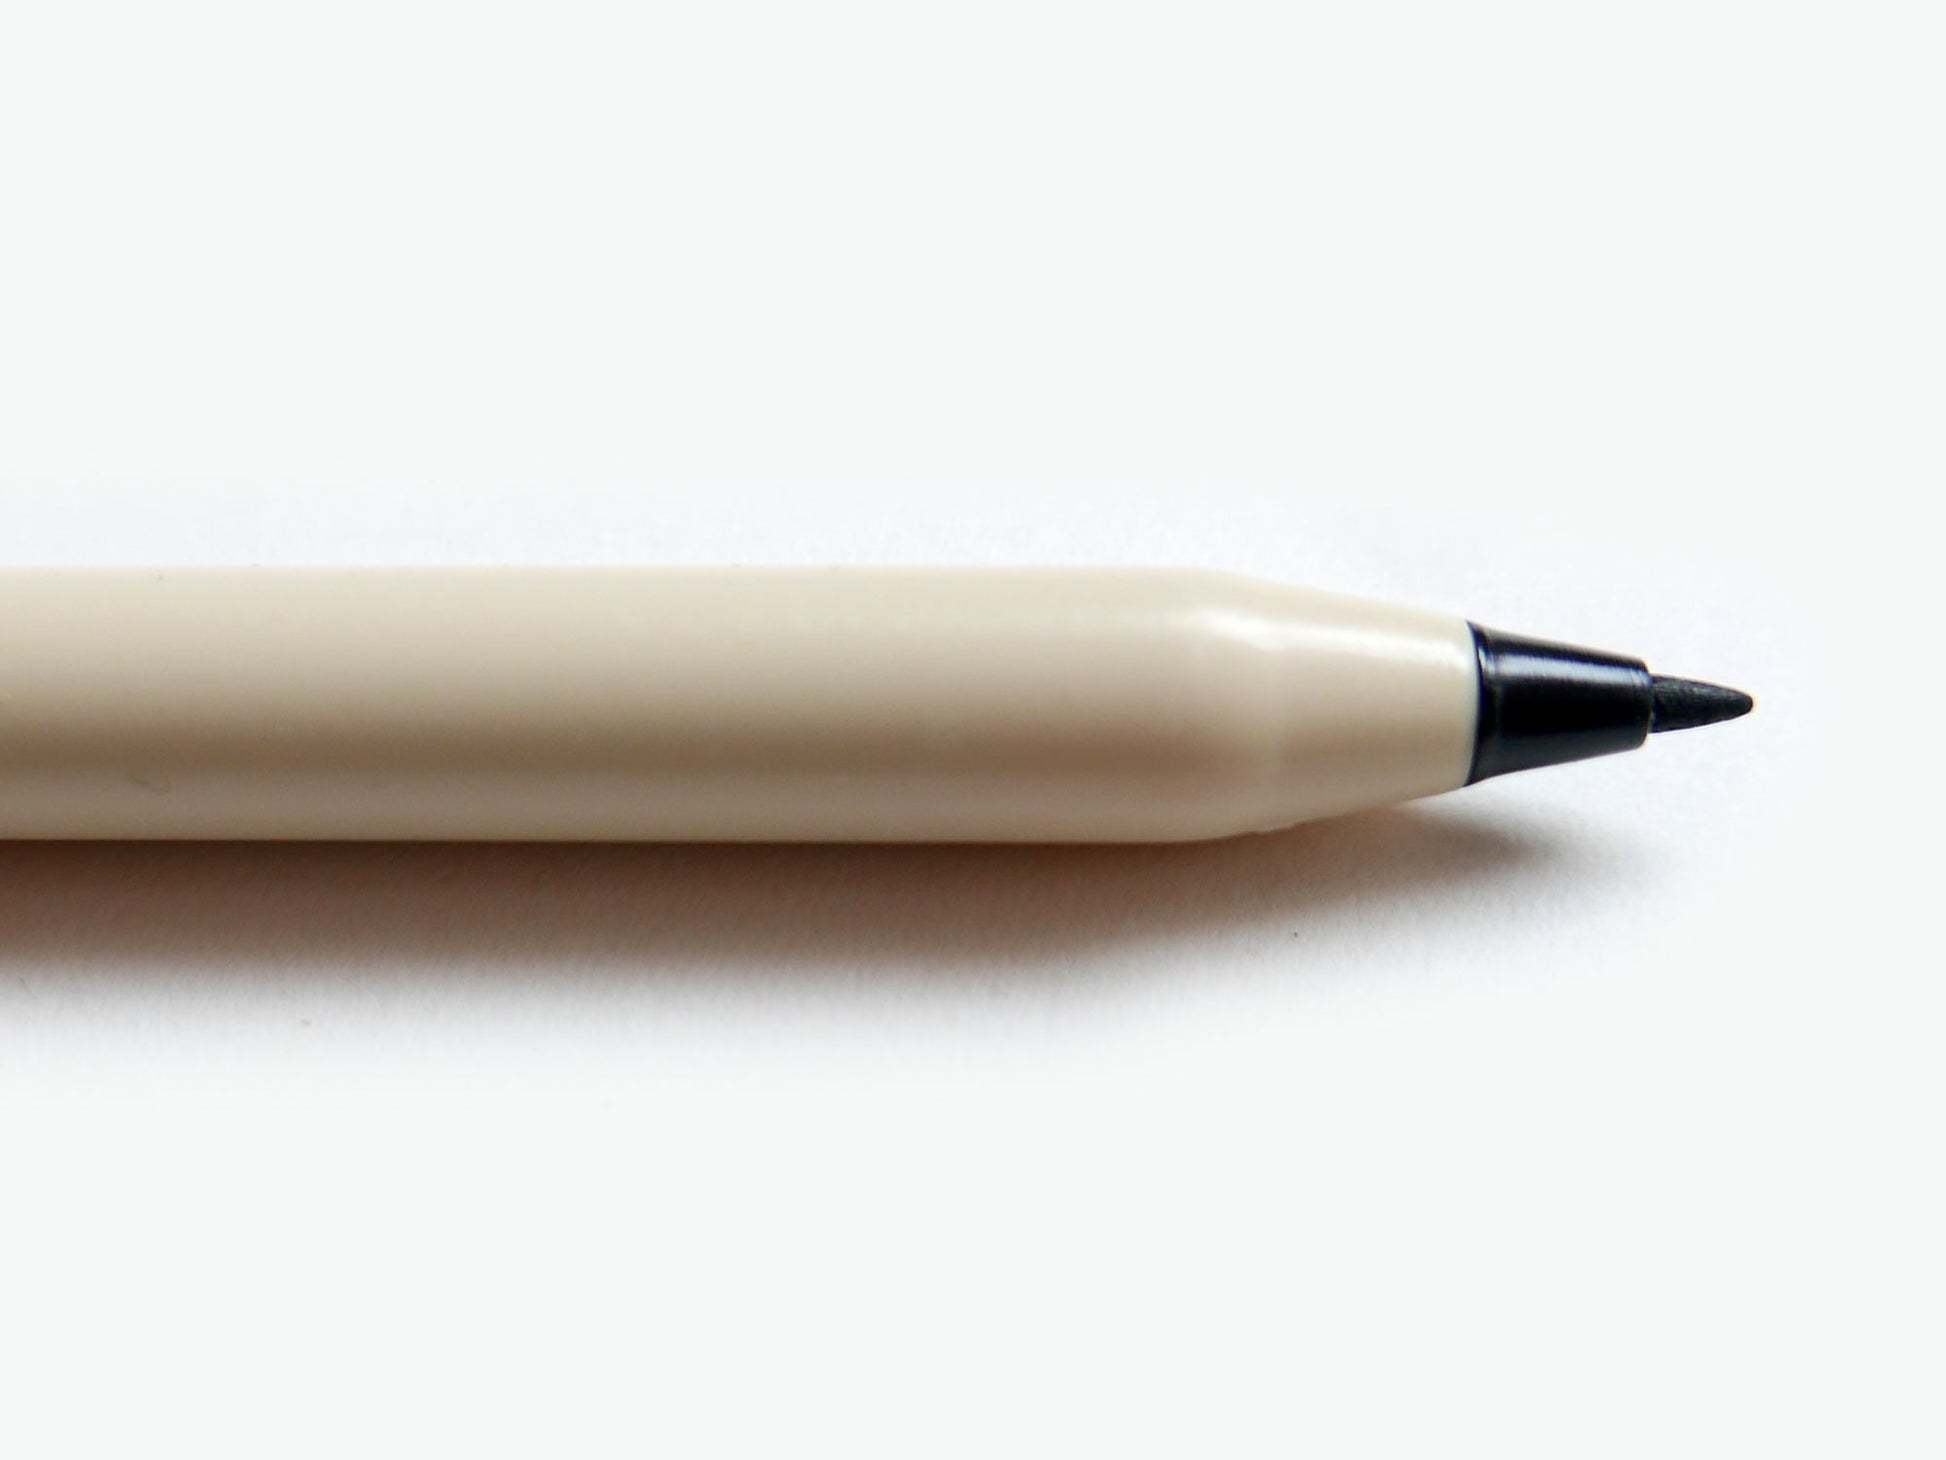 Magic Pen – Present & Correct